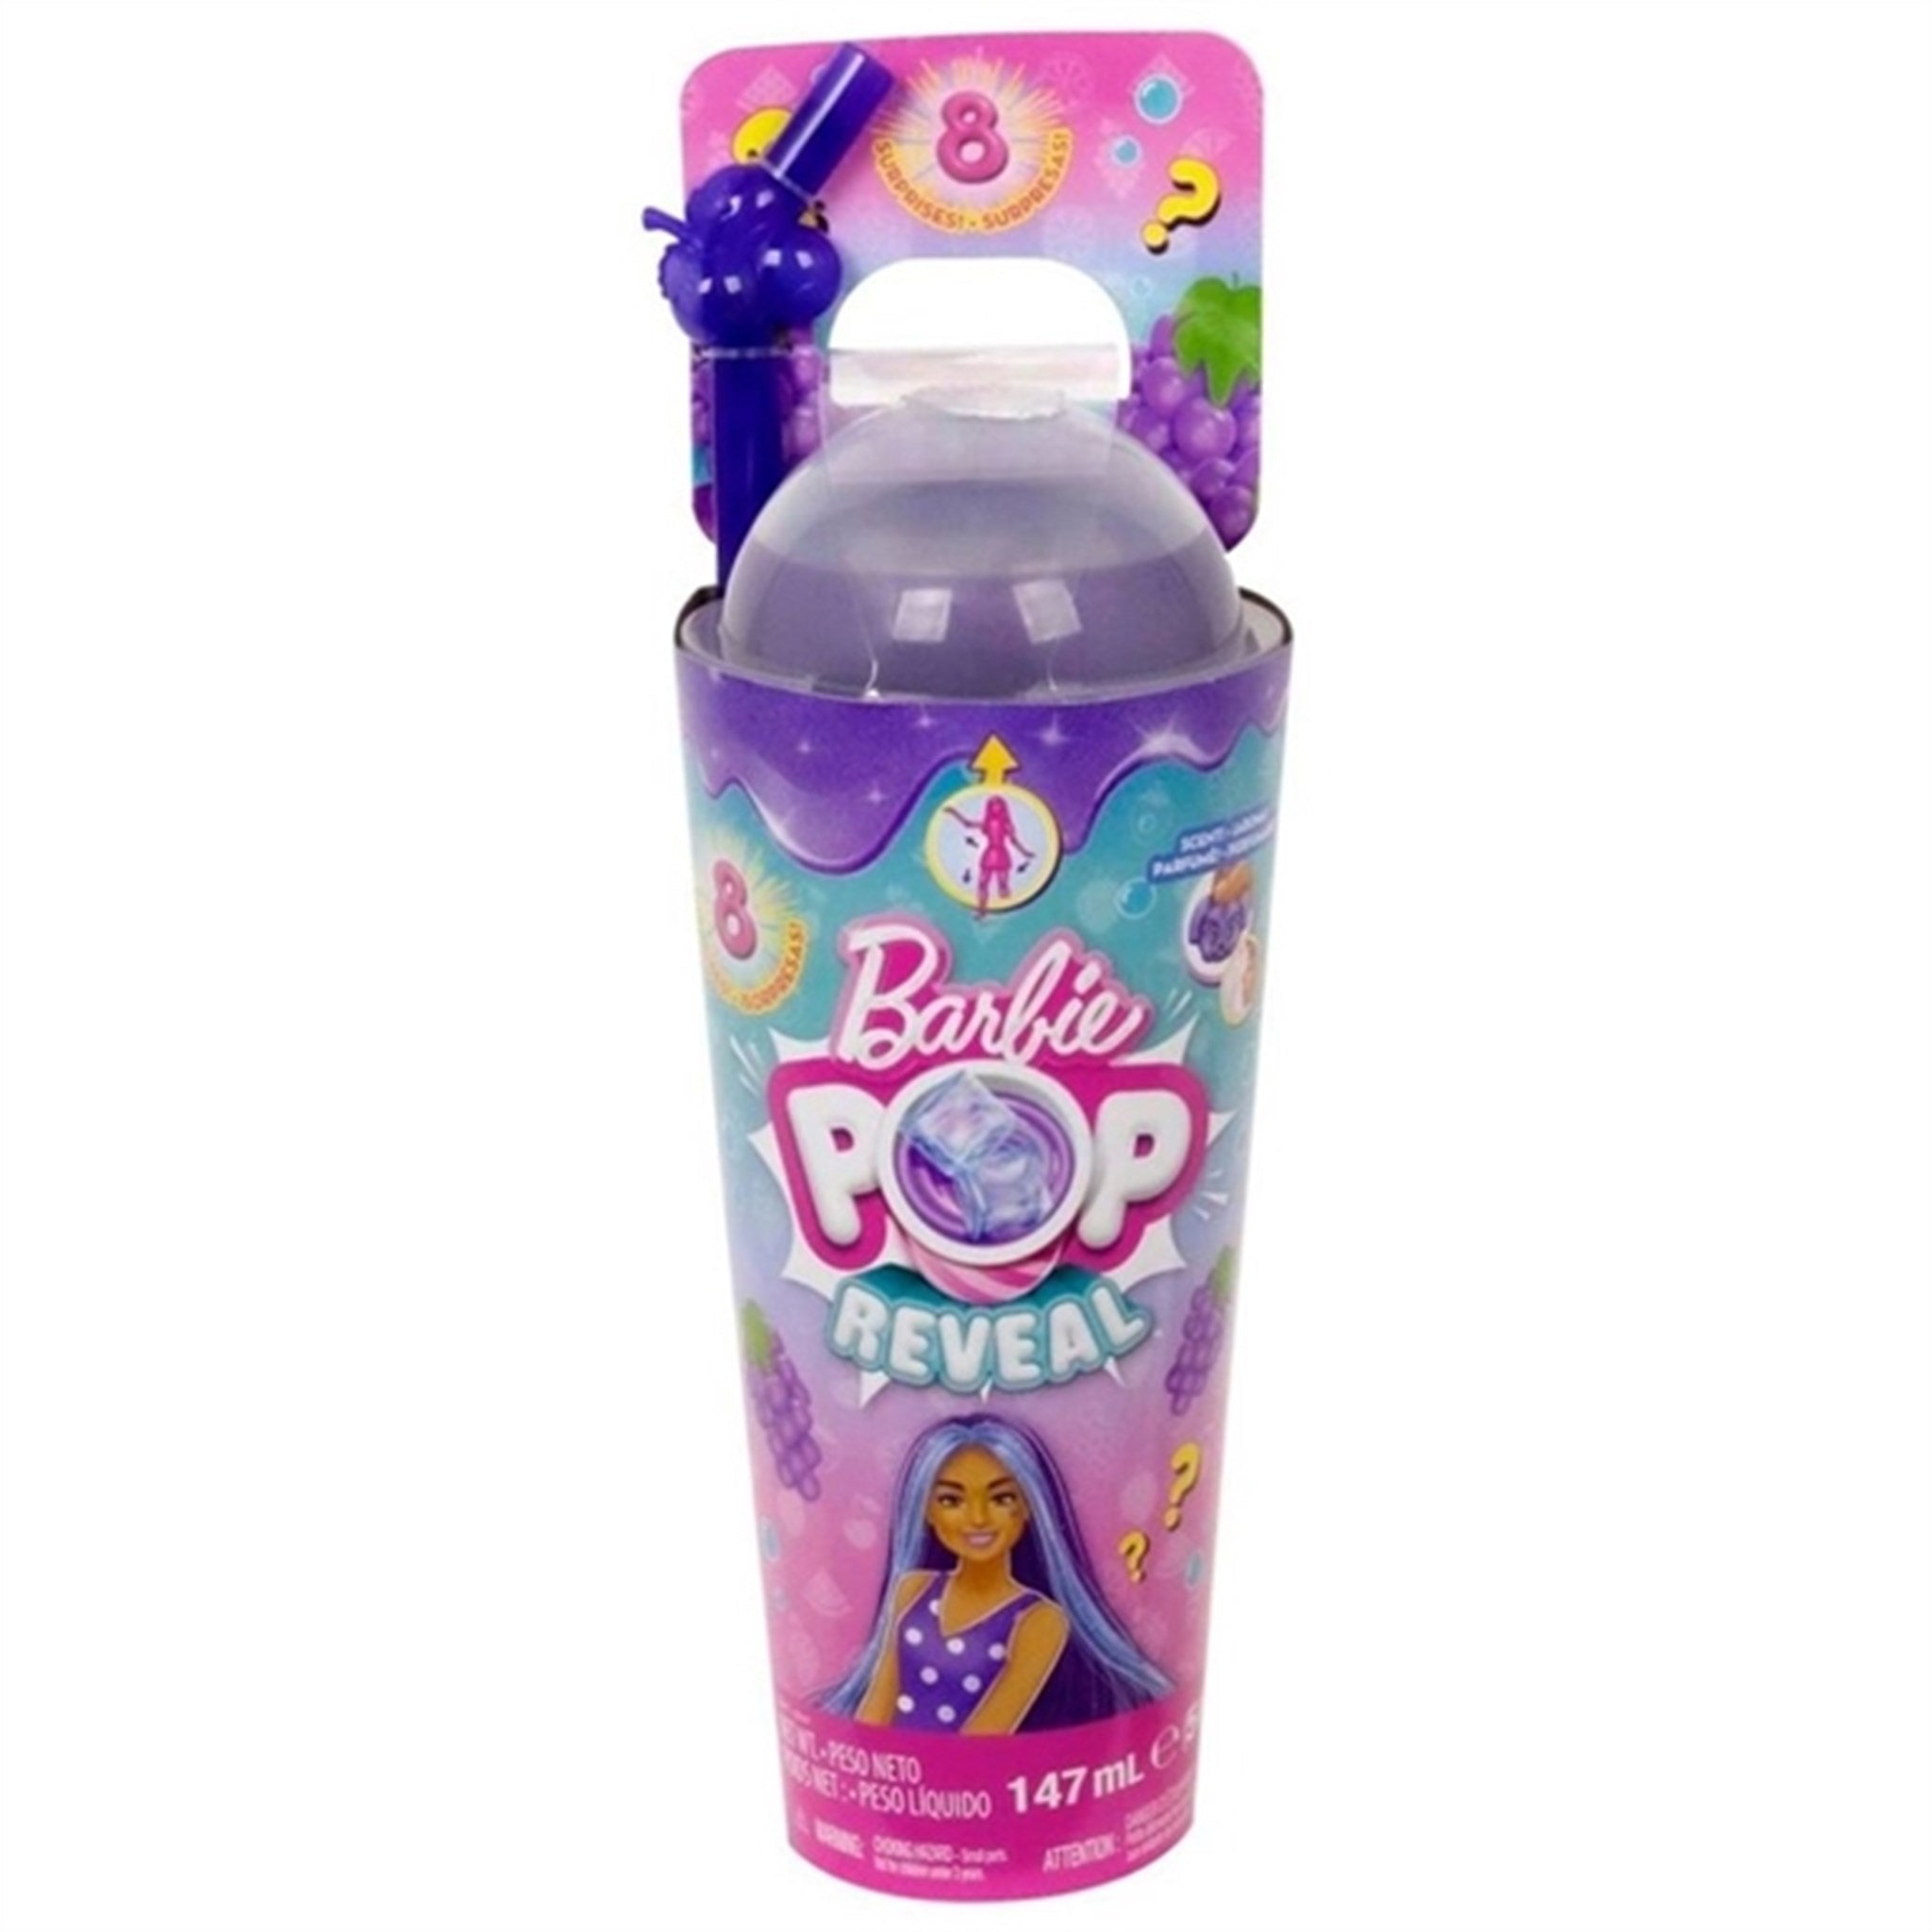 Barbie® Pop Reveal Juicy Grape Fizz